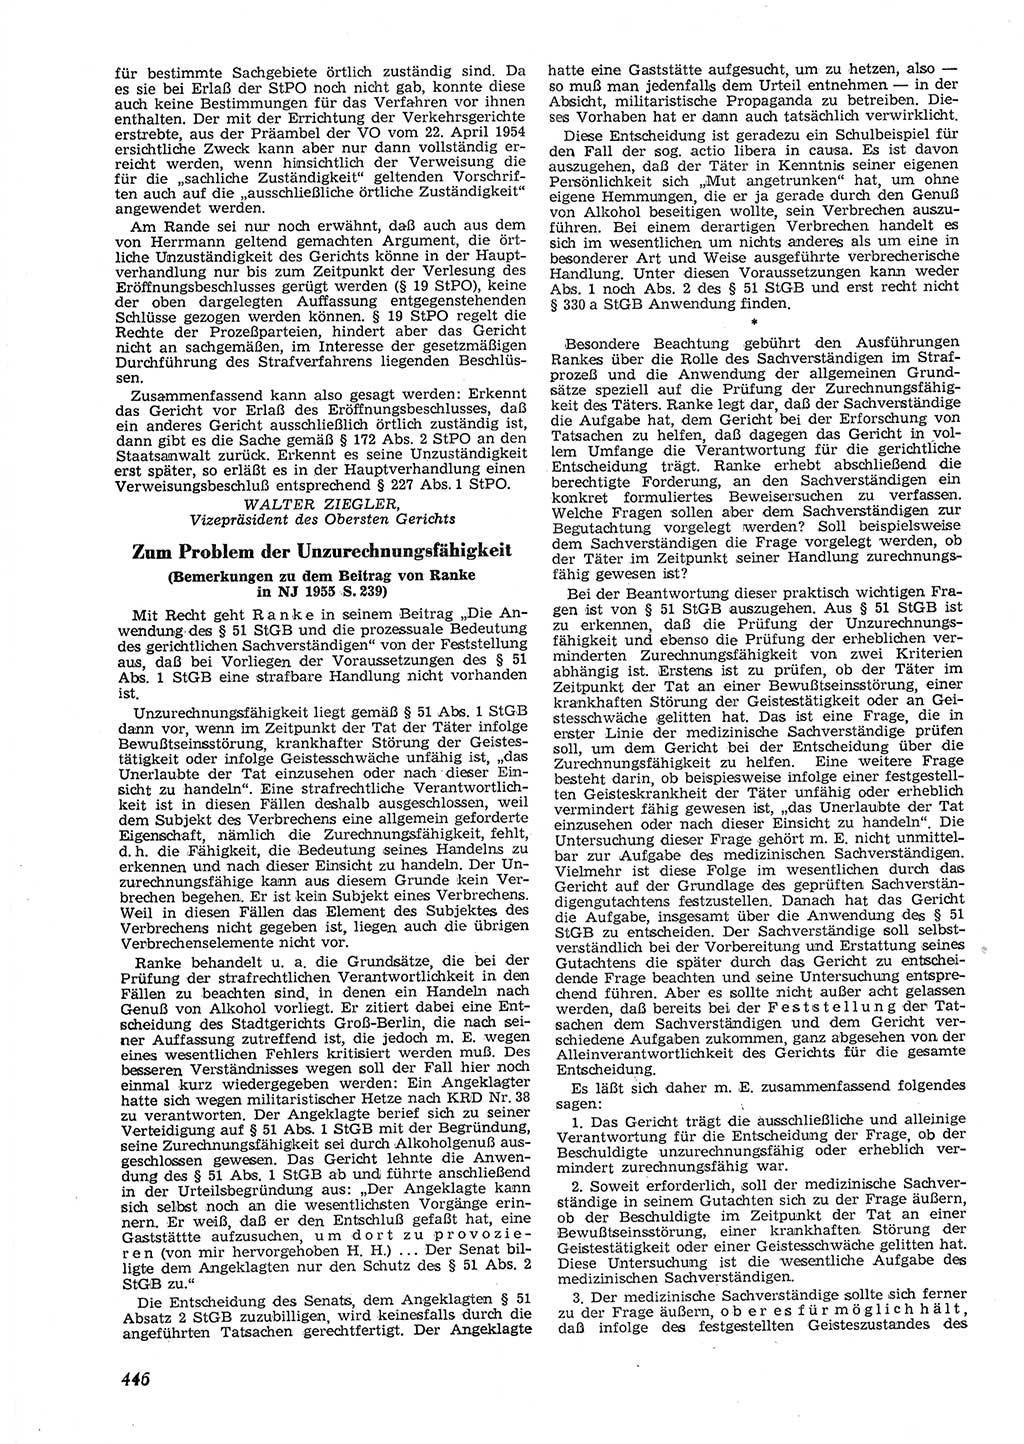 Neue Justiz (NJ), Zeitschrift für Recht und Rechtswissenschaft [Deutsche Demokratische Republik (DDR)], 9. Jahrgang 1955, Seite 446 (NJ DDR 1955, S. 446)